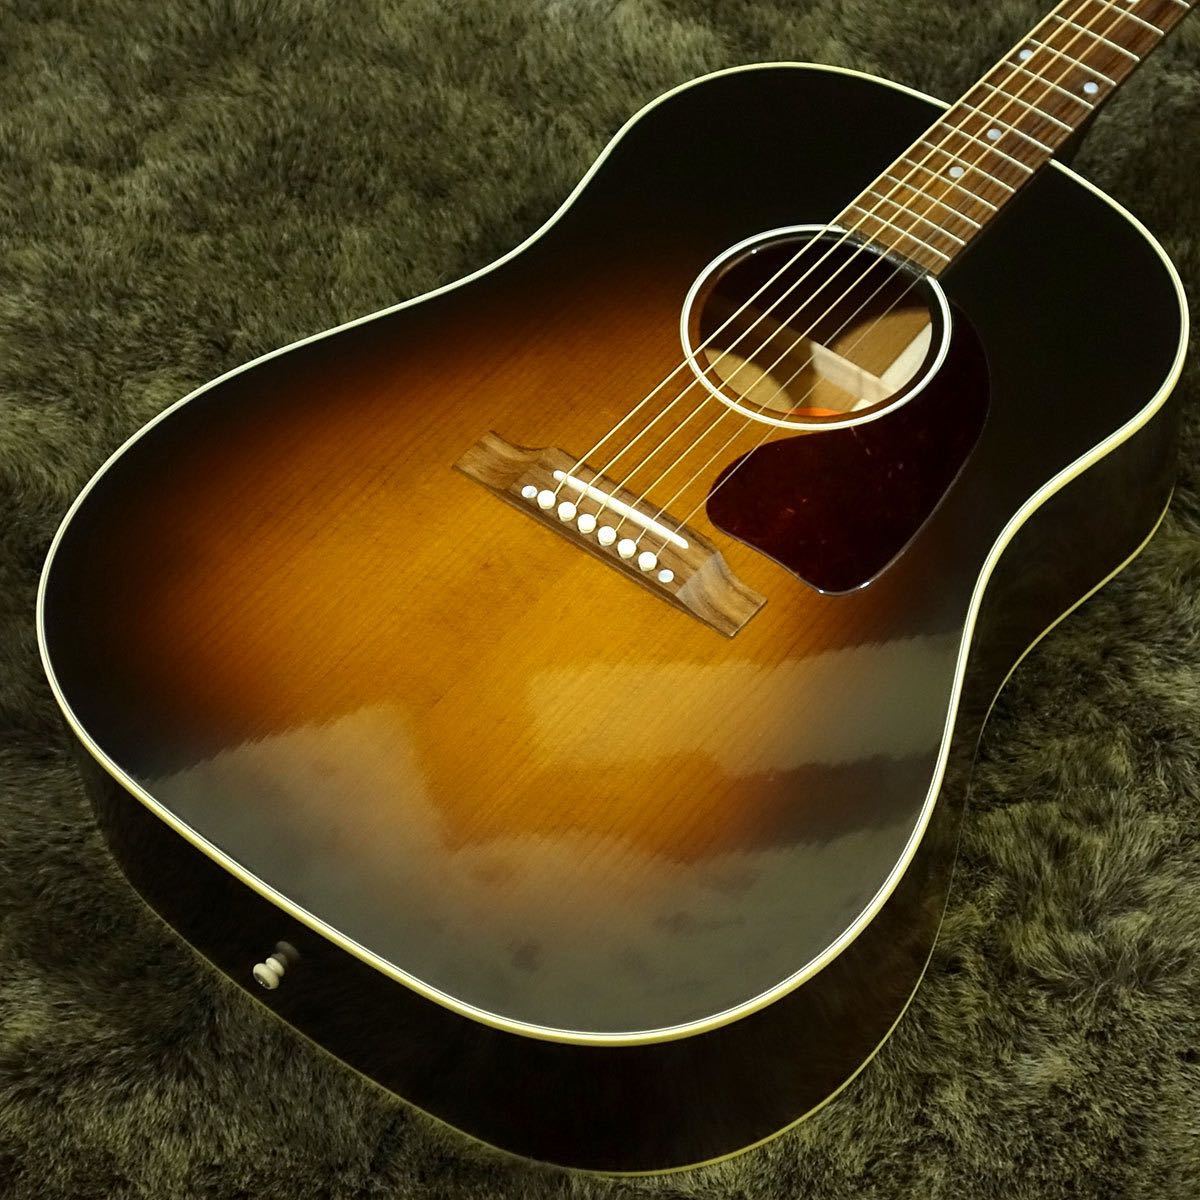 Gibson J-45 Vintage アディロンダック レッド・スプルース サマリー